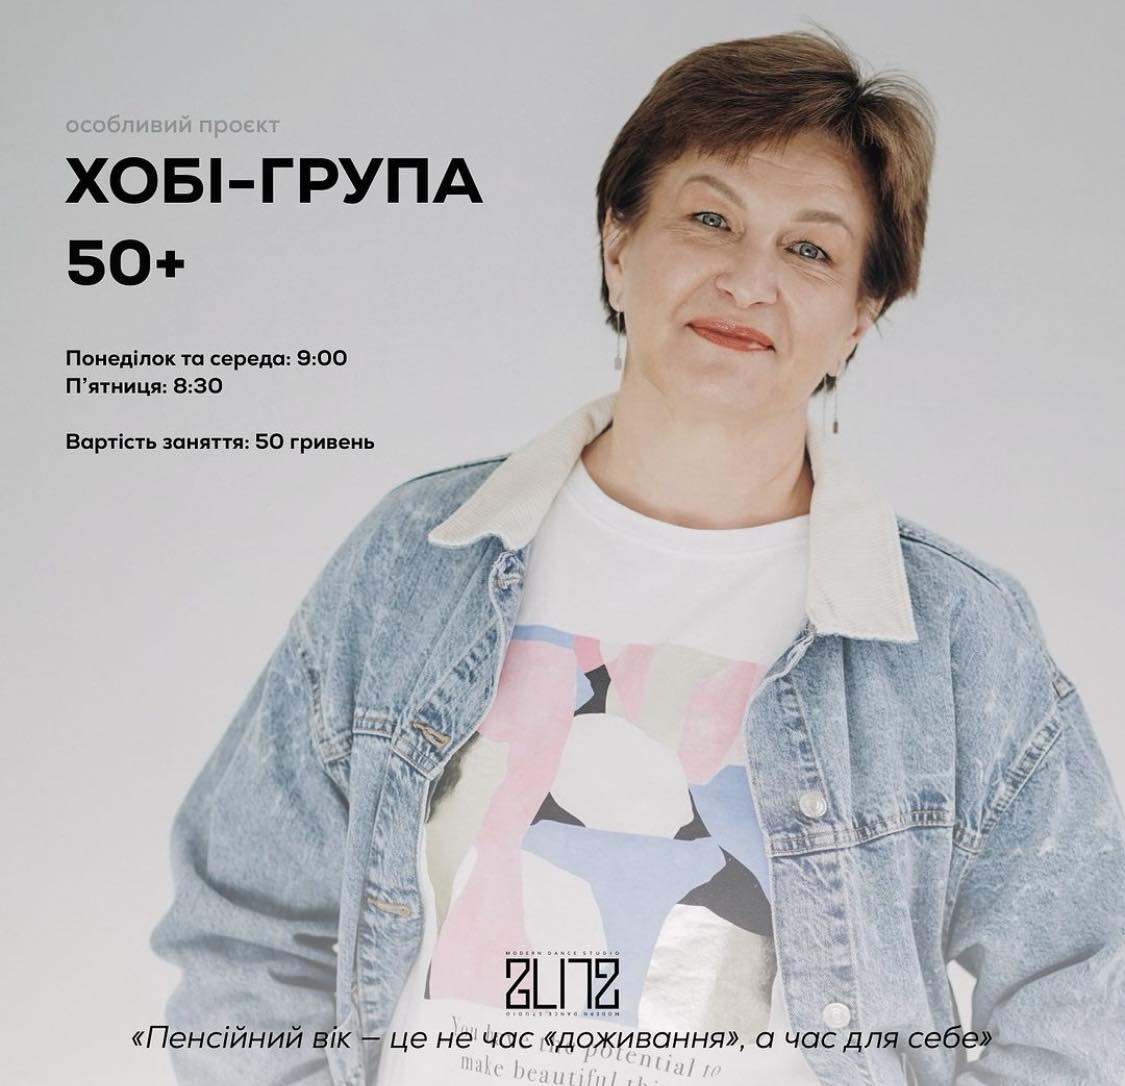 Керівниця "Бліцу" Олена Камінська збирає групу для занять з жінок 50+